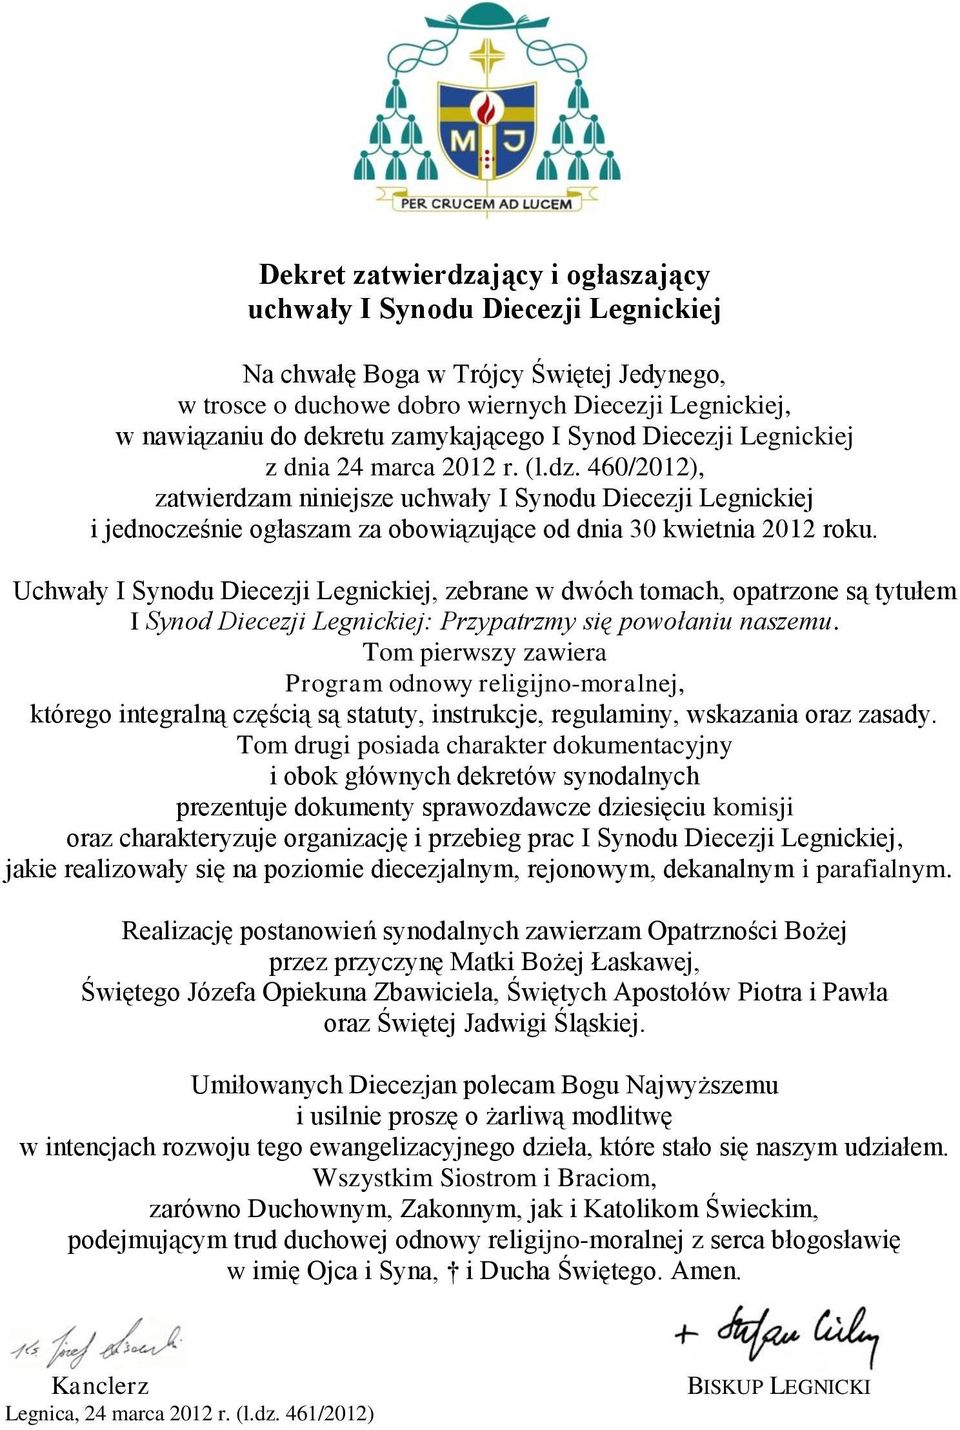 460/2012), zatwierdzam niniejsze uchwały I Synodu Diecezji Legnickiej i jednocześnie ogłaszam za obowiązujące od dnia 30 kwietnia 2012 roku.